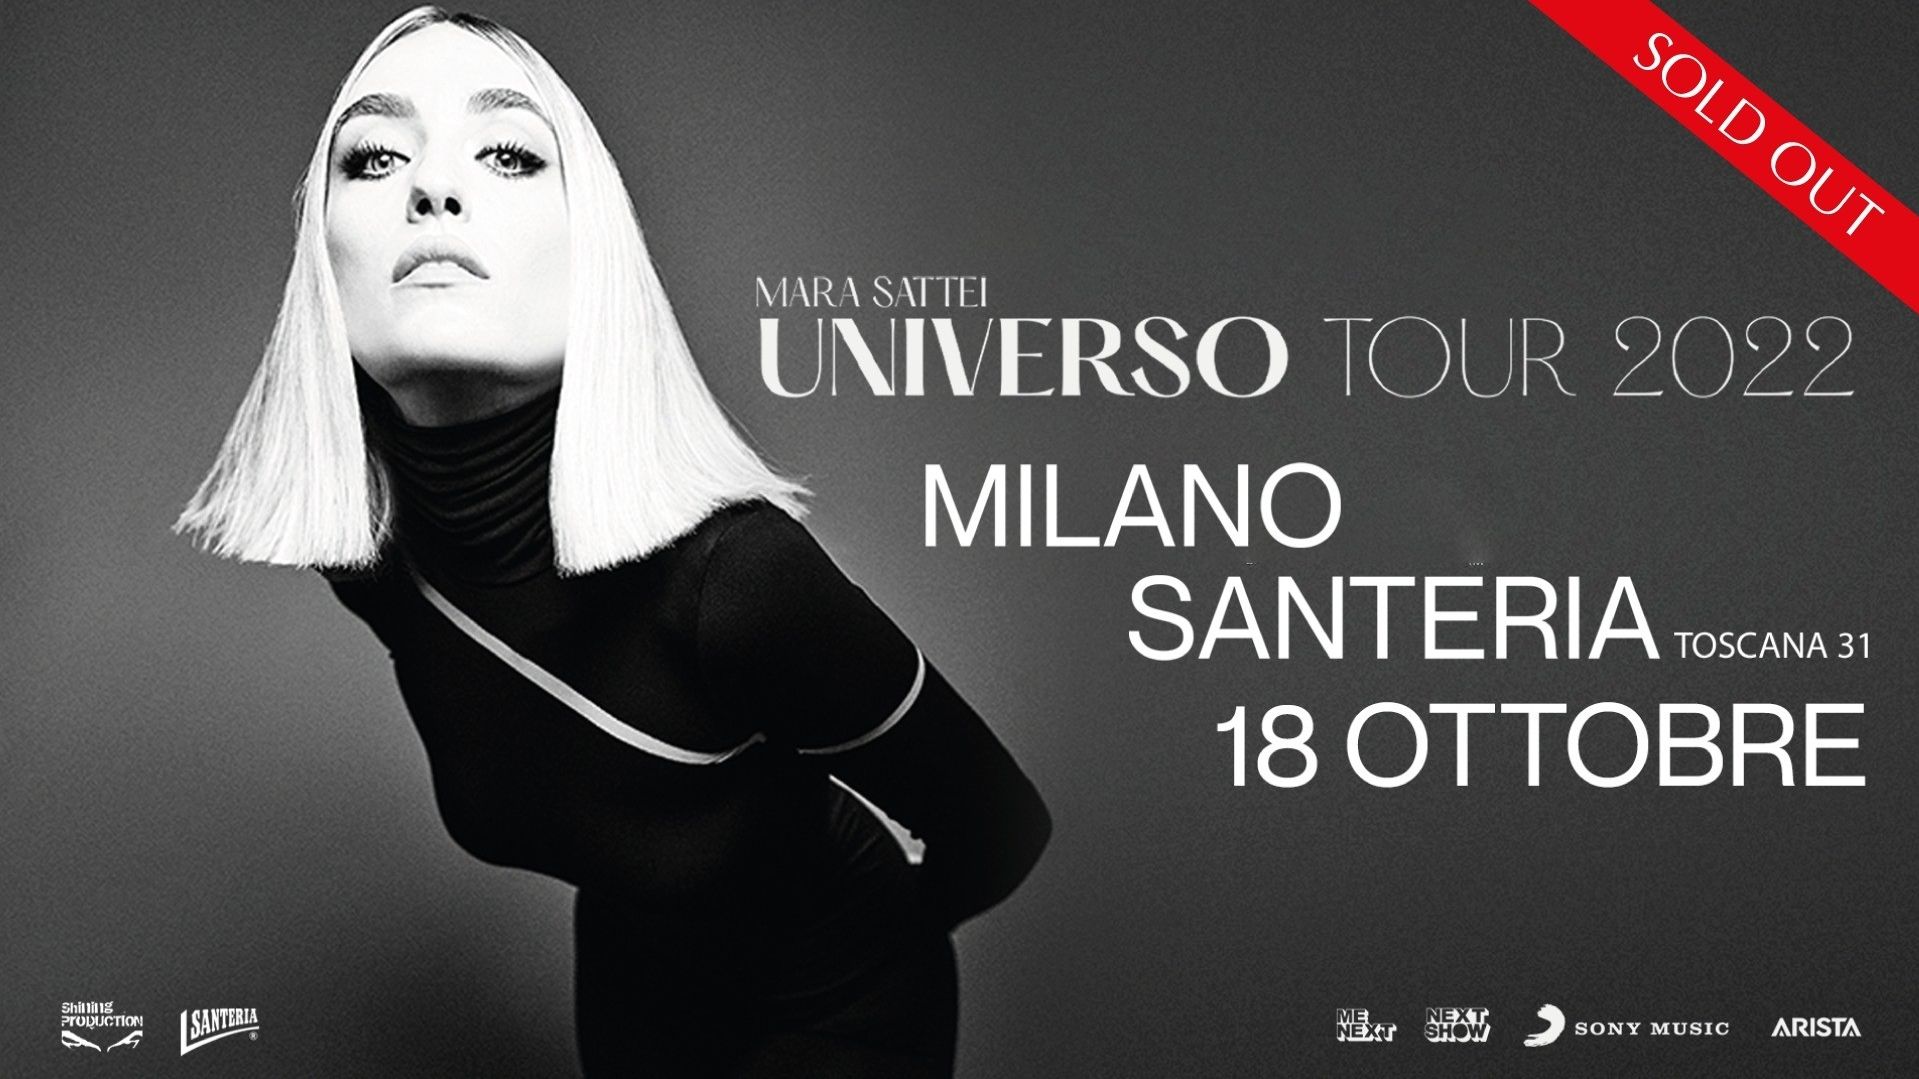 Mara Sattei "Universo Tour"